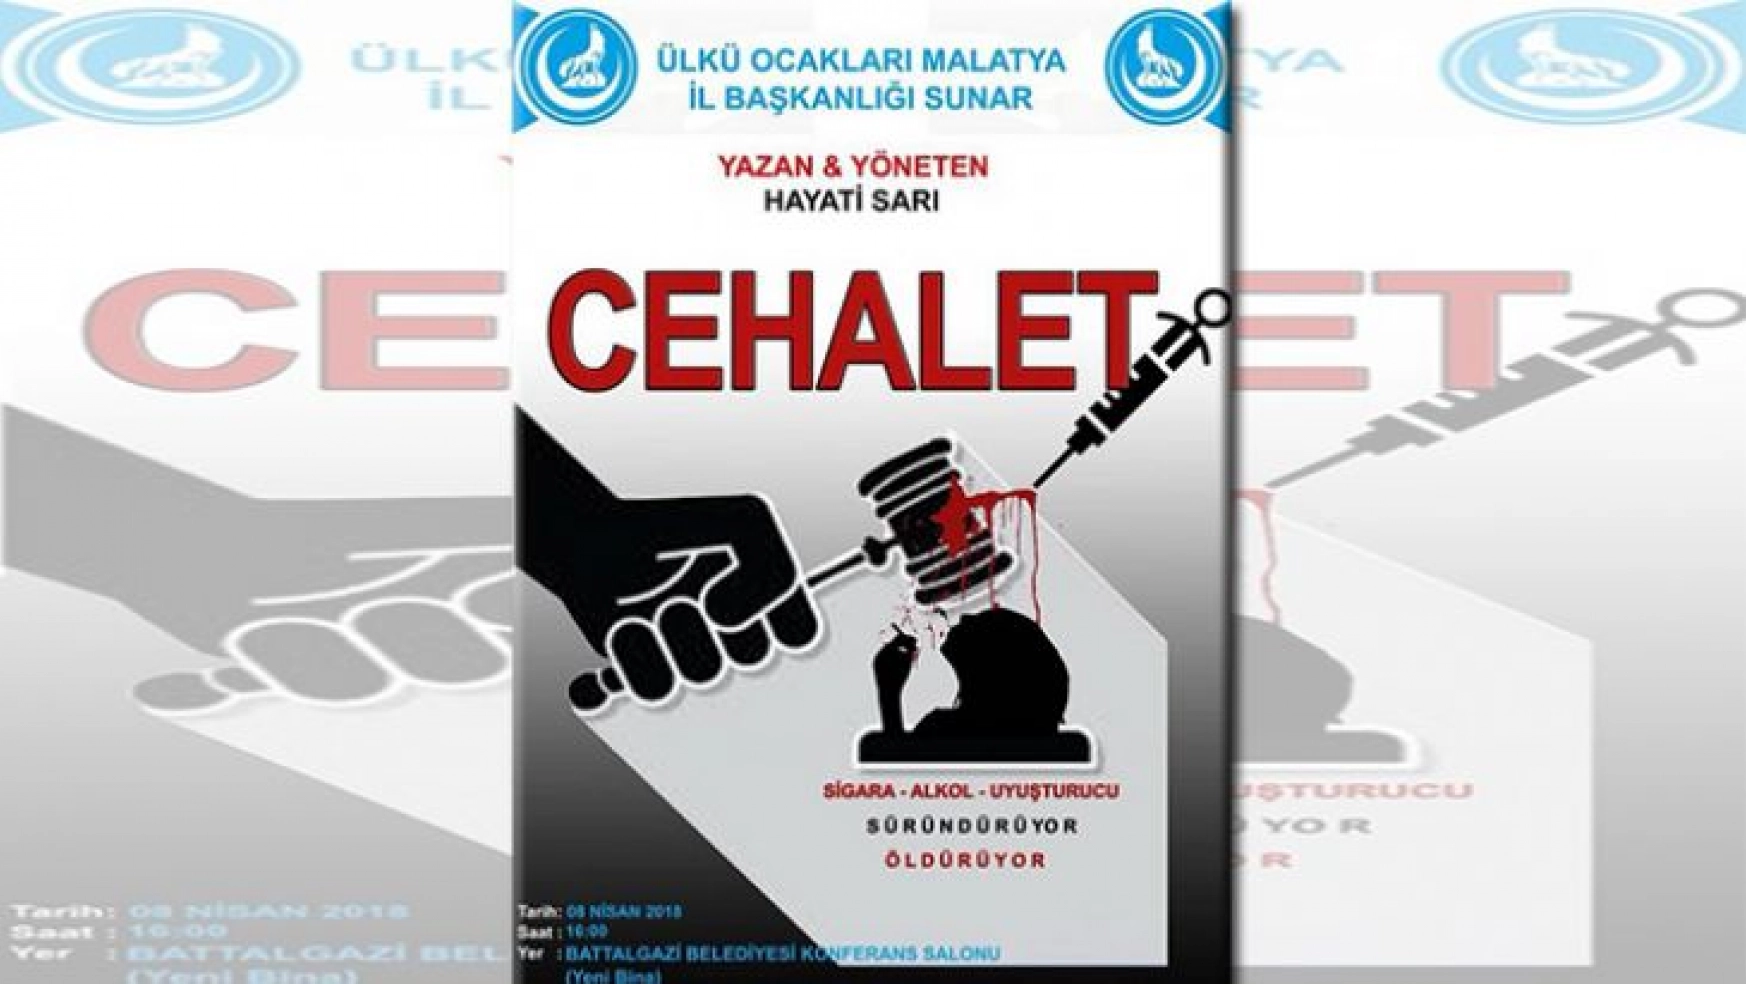 Ülkü Ocaklarından Ücretsiz Tiyatro Gösterimi 'Cehalet' Davet